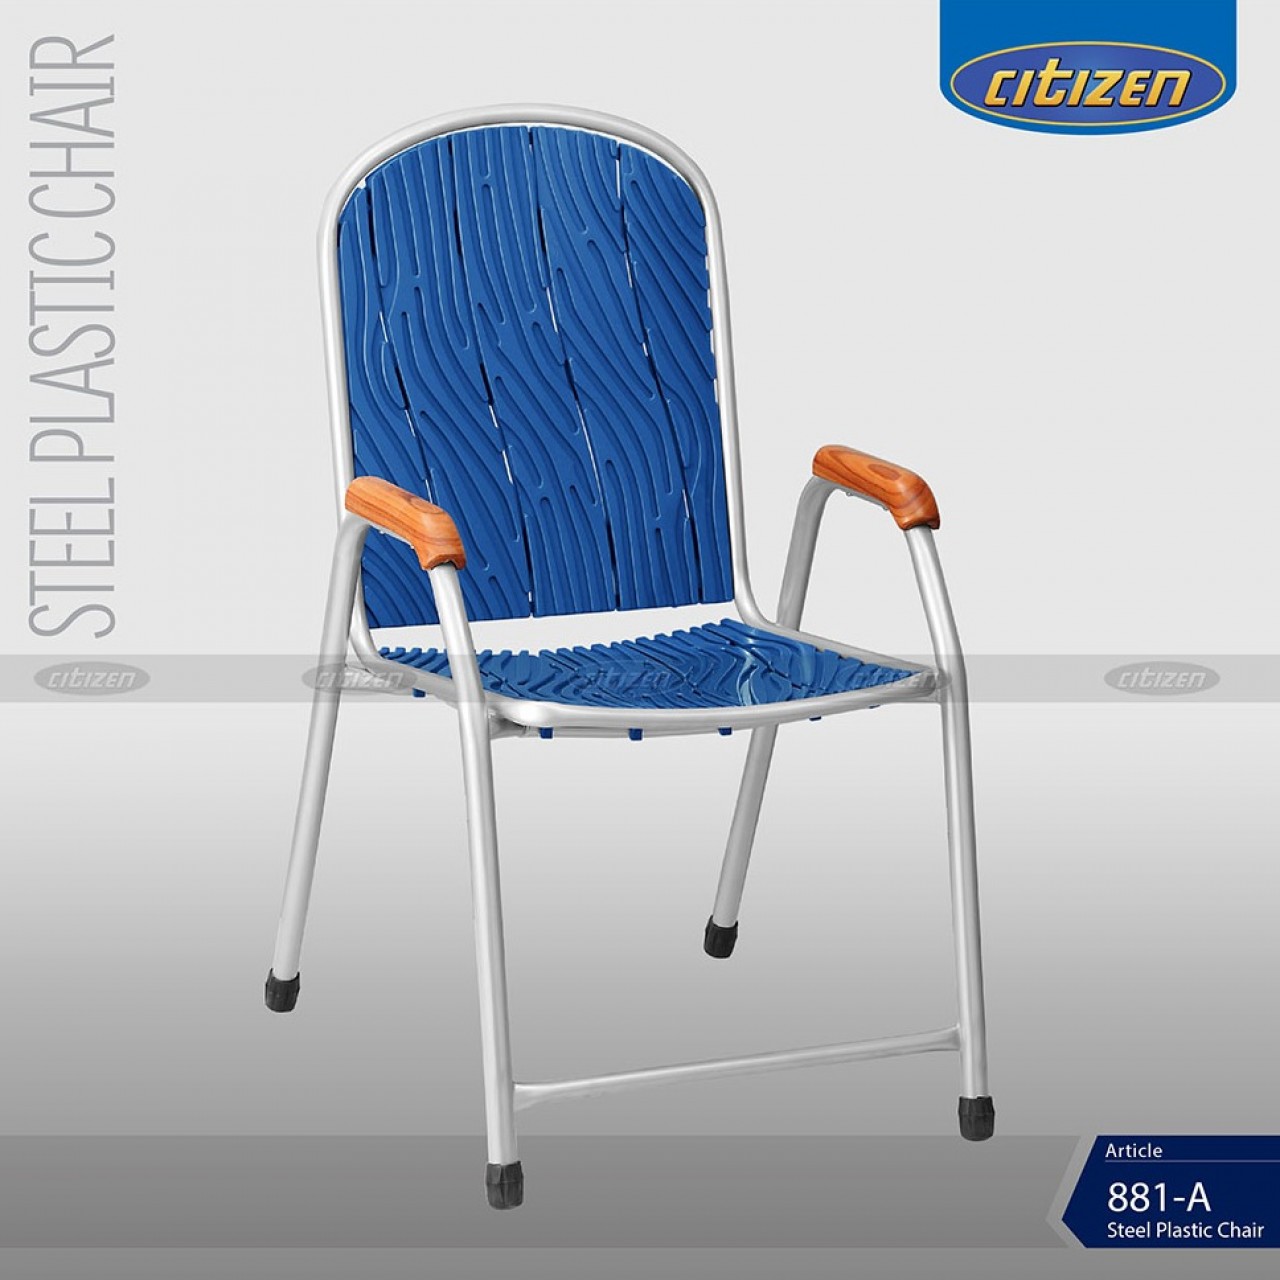 Citizen 881-A Steel & Plastic Chair - Indoor & Outdoor Furniture